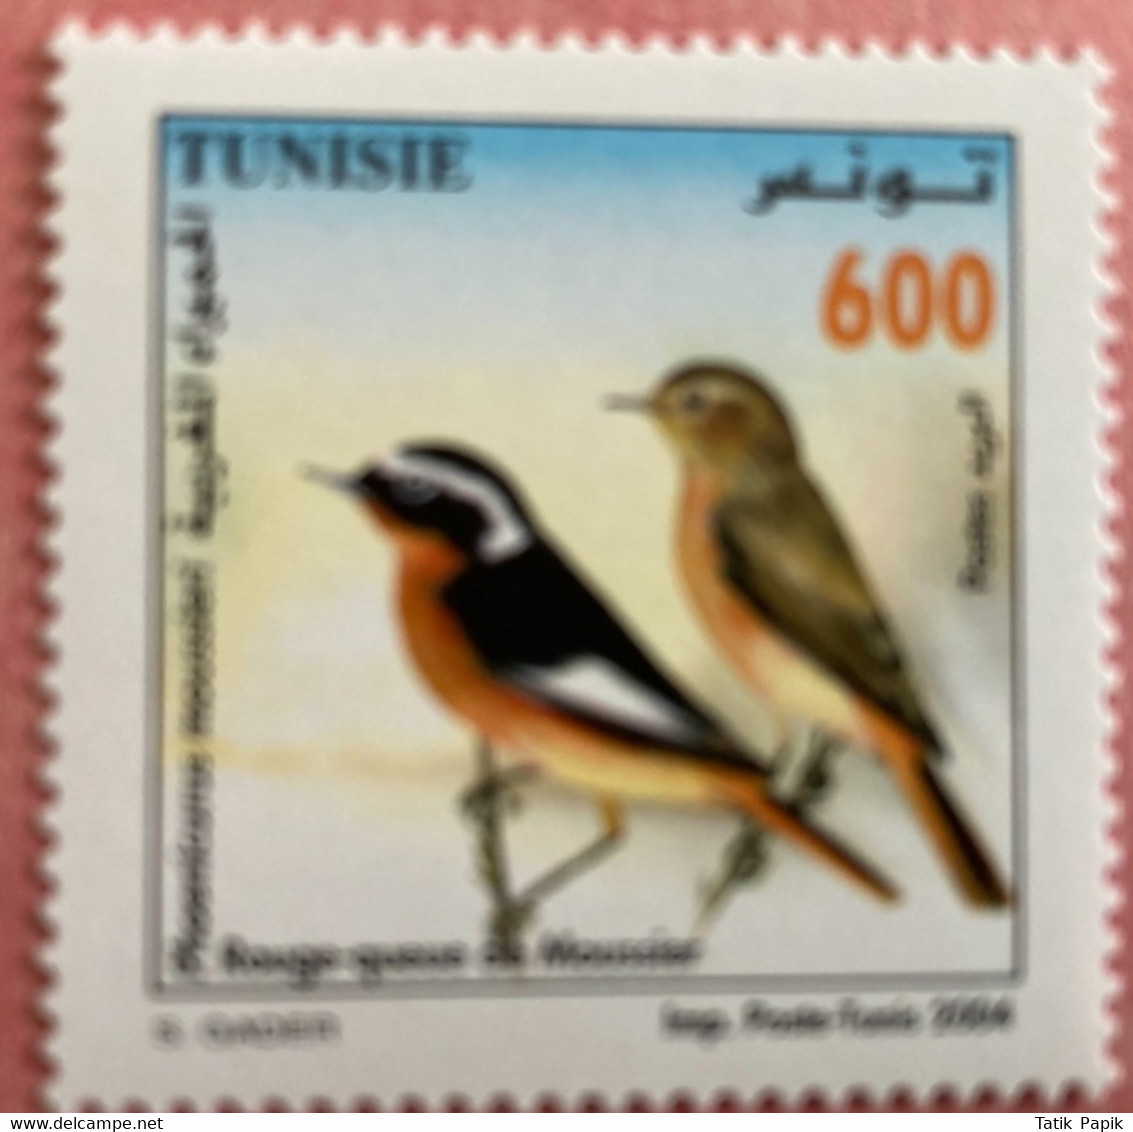 2004 Tunisie Oiseaux Rouge Queue Tunisia Birds 1V MNH** - Passeri